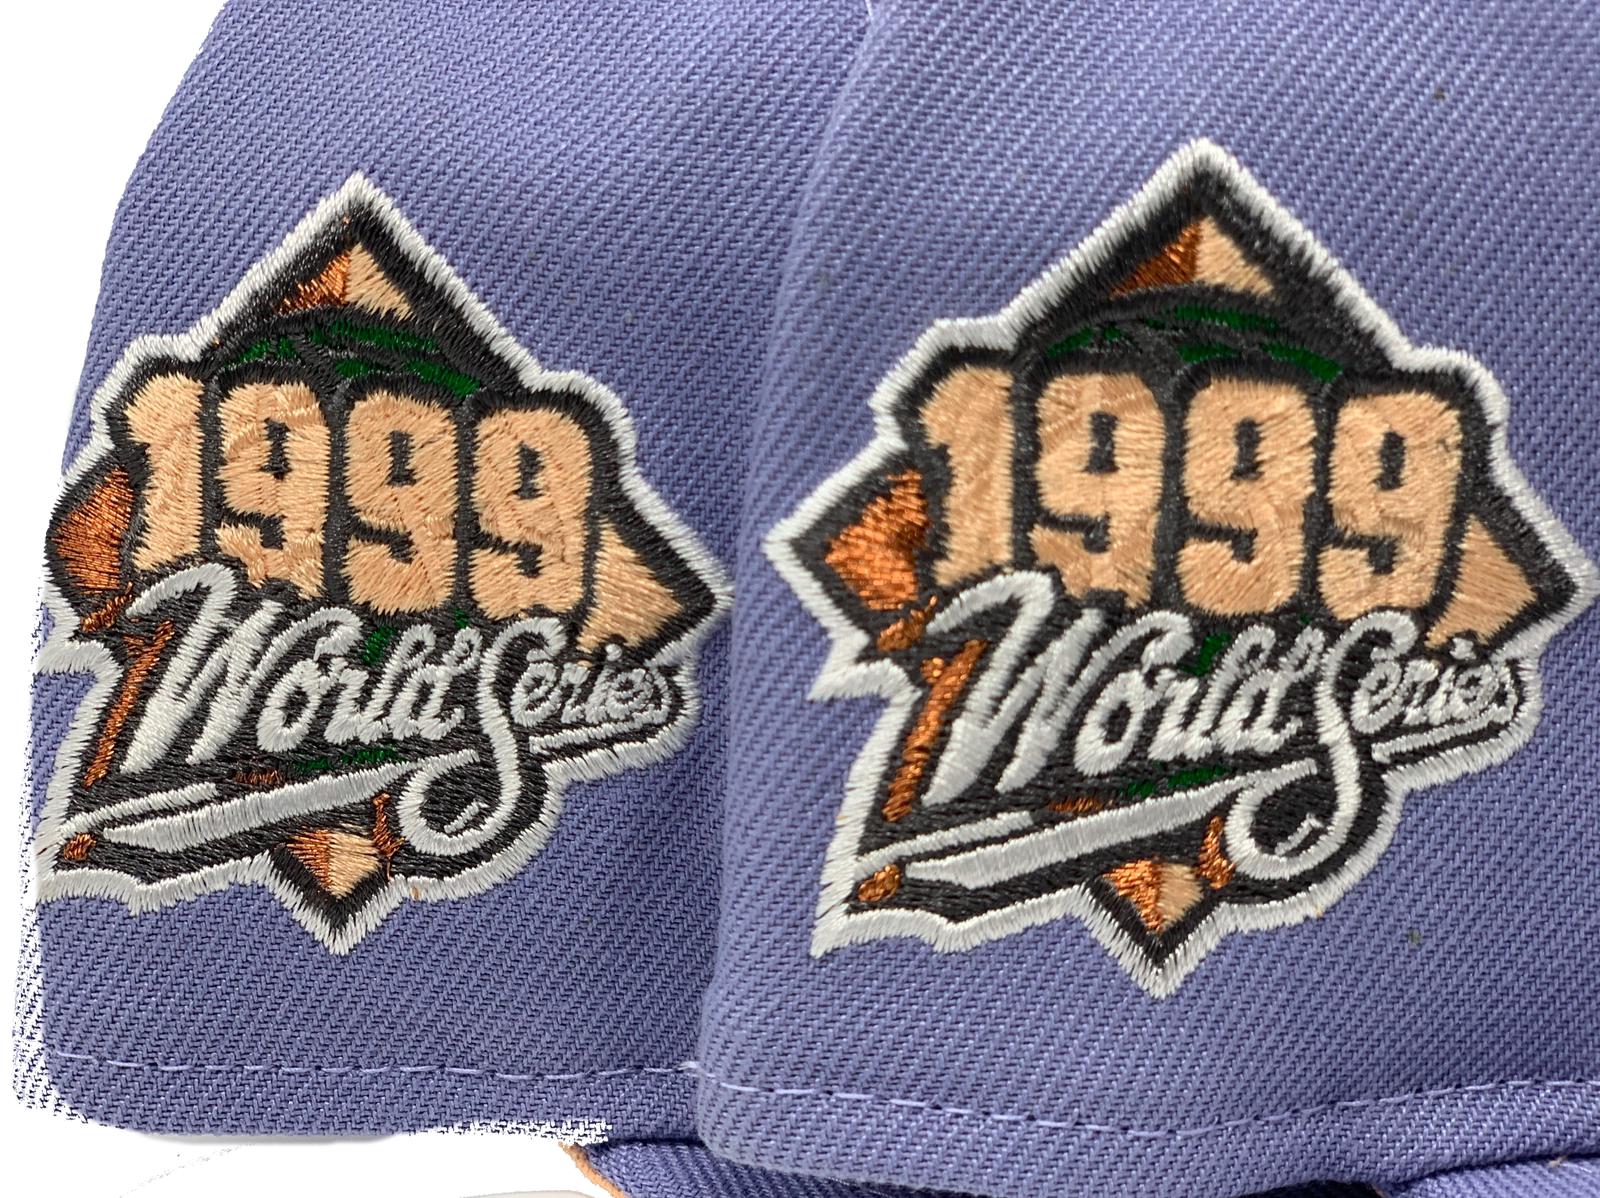 New Era 59Fifty Peaches and Cream New York Yankees 1999 World Series P –  Hat Club